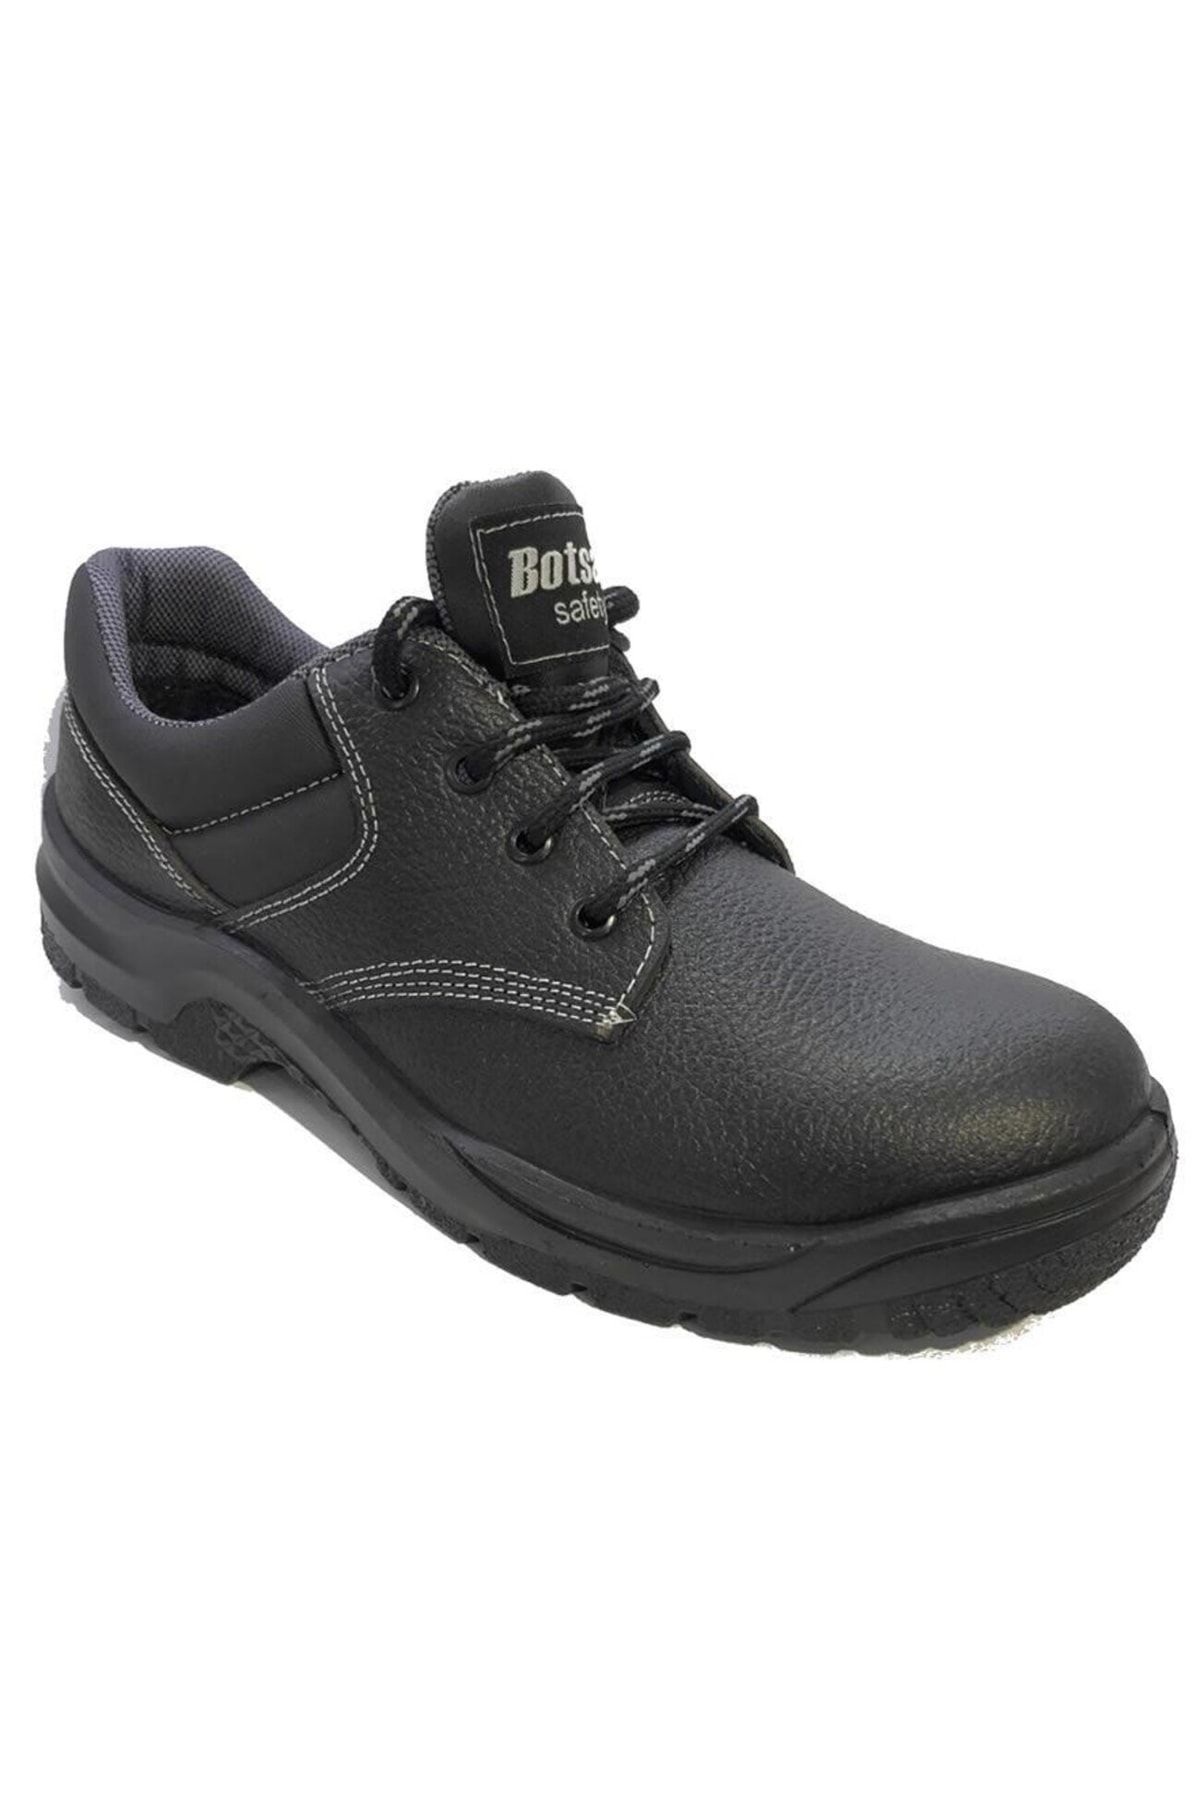 BAYRAMOĞLU KUNDURA Byk 242 Botsann Siyah Çelik Burunsuz Iş Güvenliği Ayakkabısı